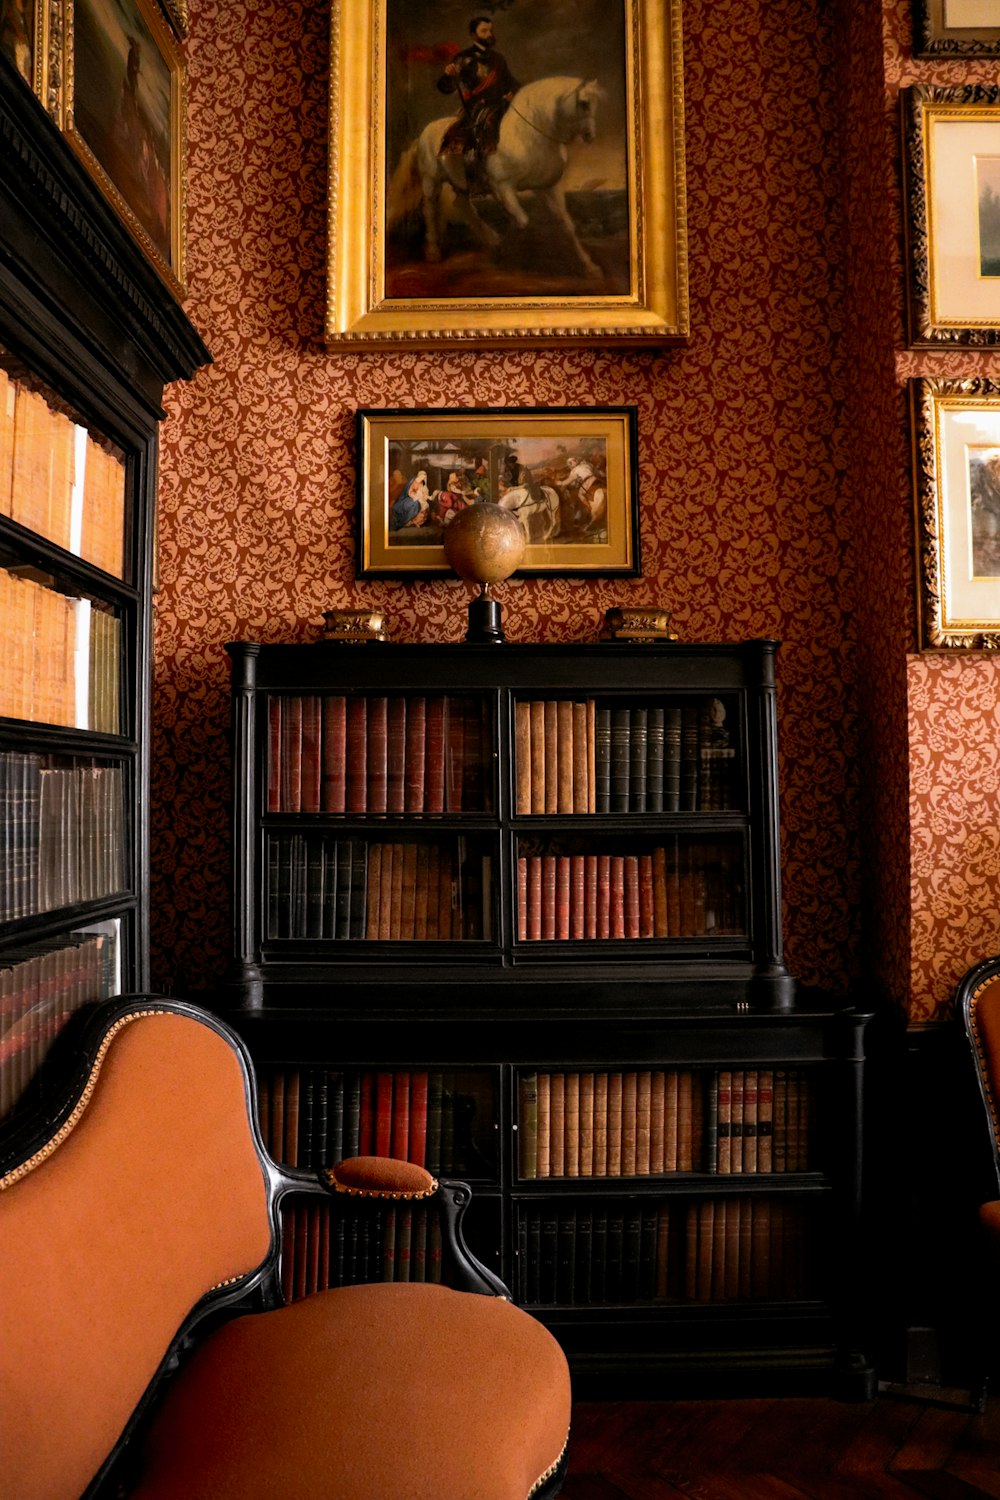 의자, 책장, 벽에 걸린 그림이 있는 방